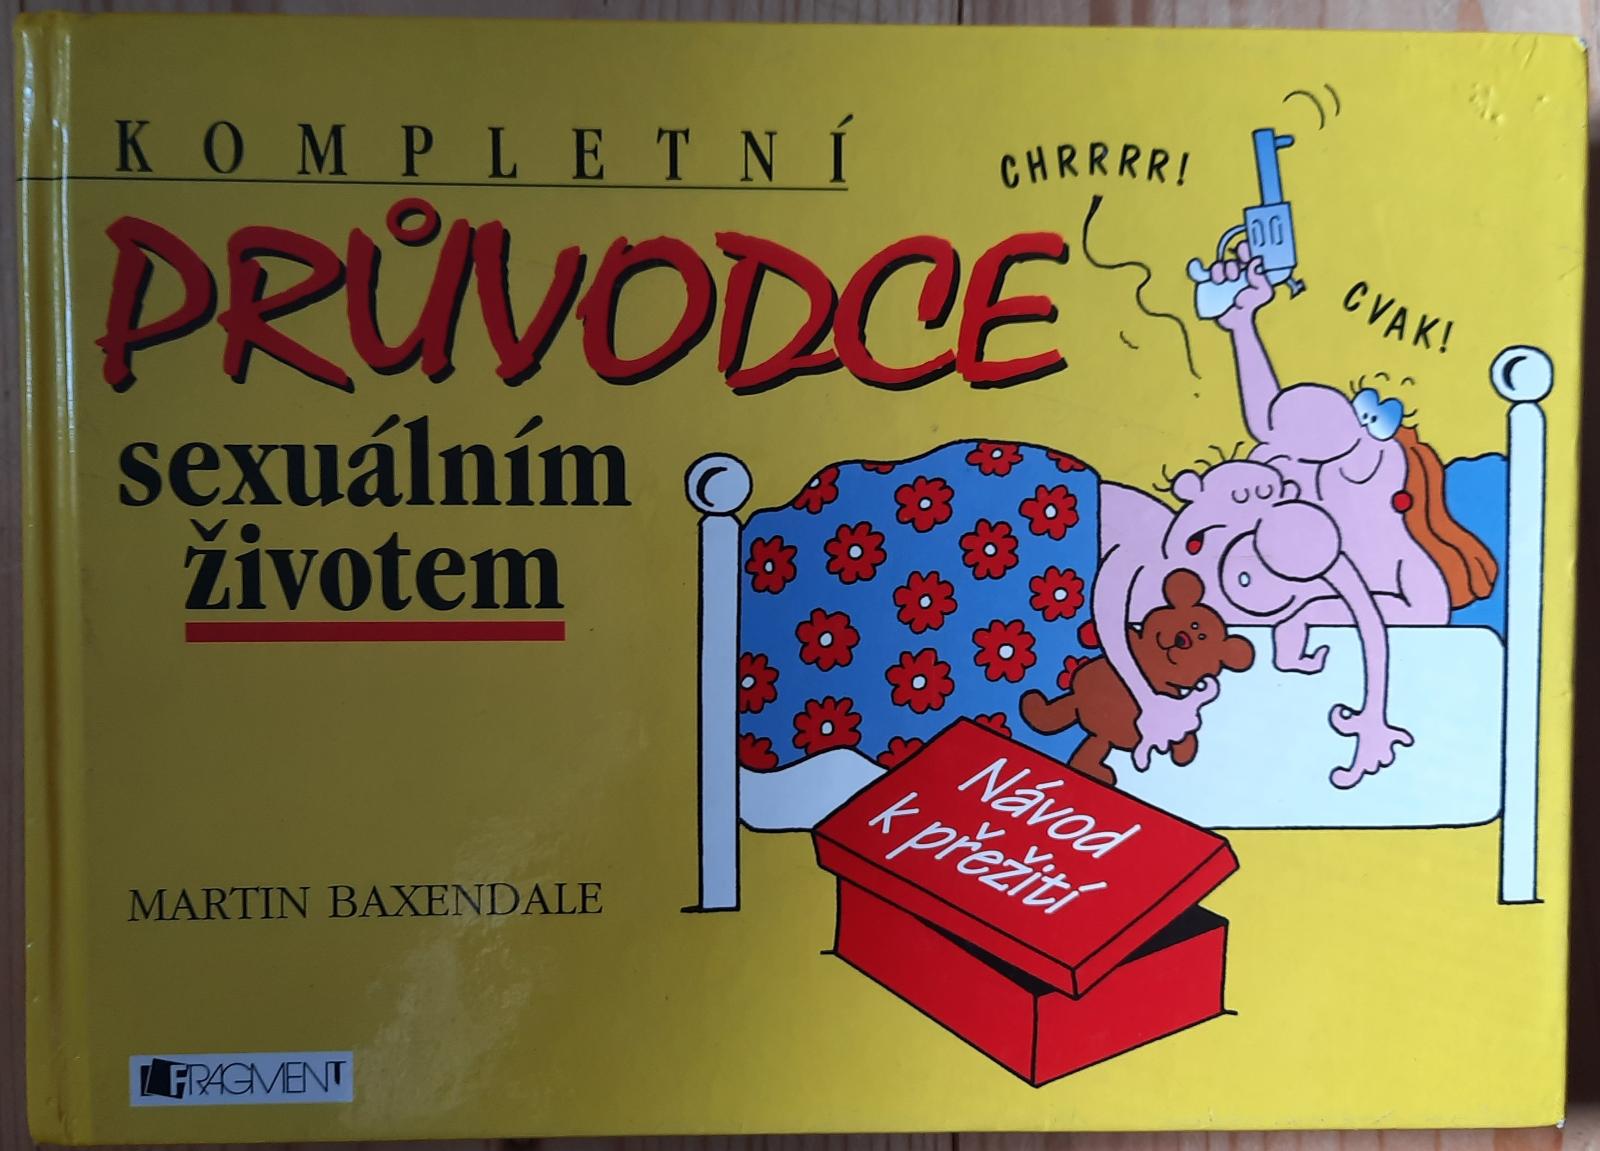 Kompletný sprievodca sexuálnym životom Martin Baxendale - Knihy